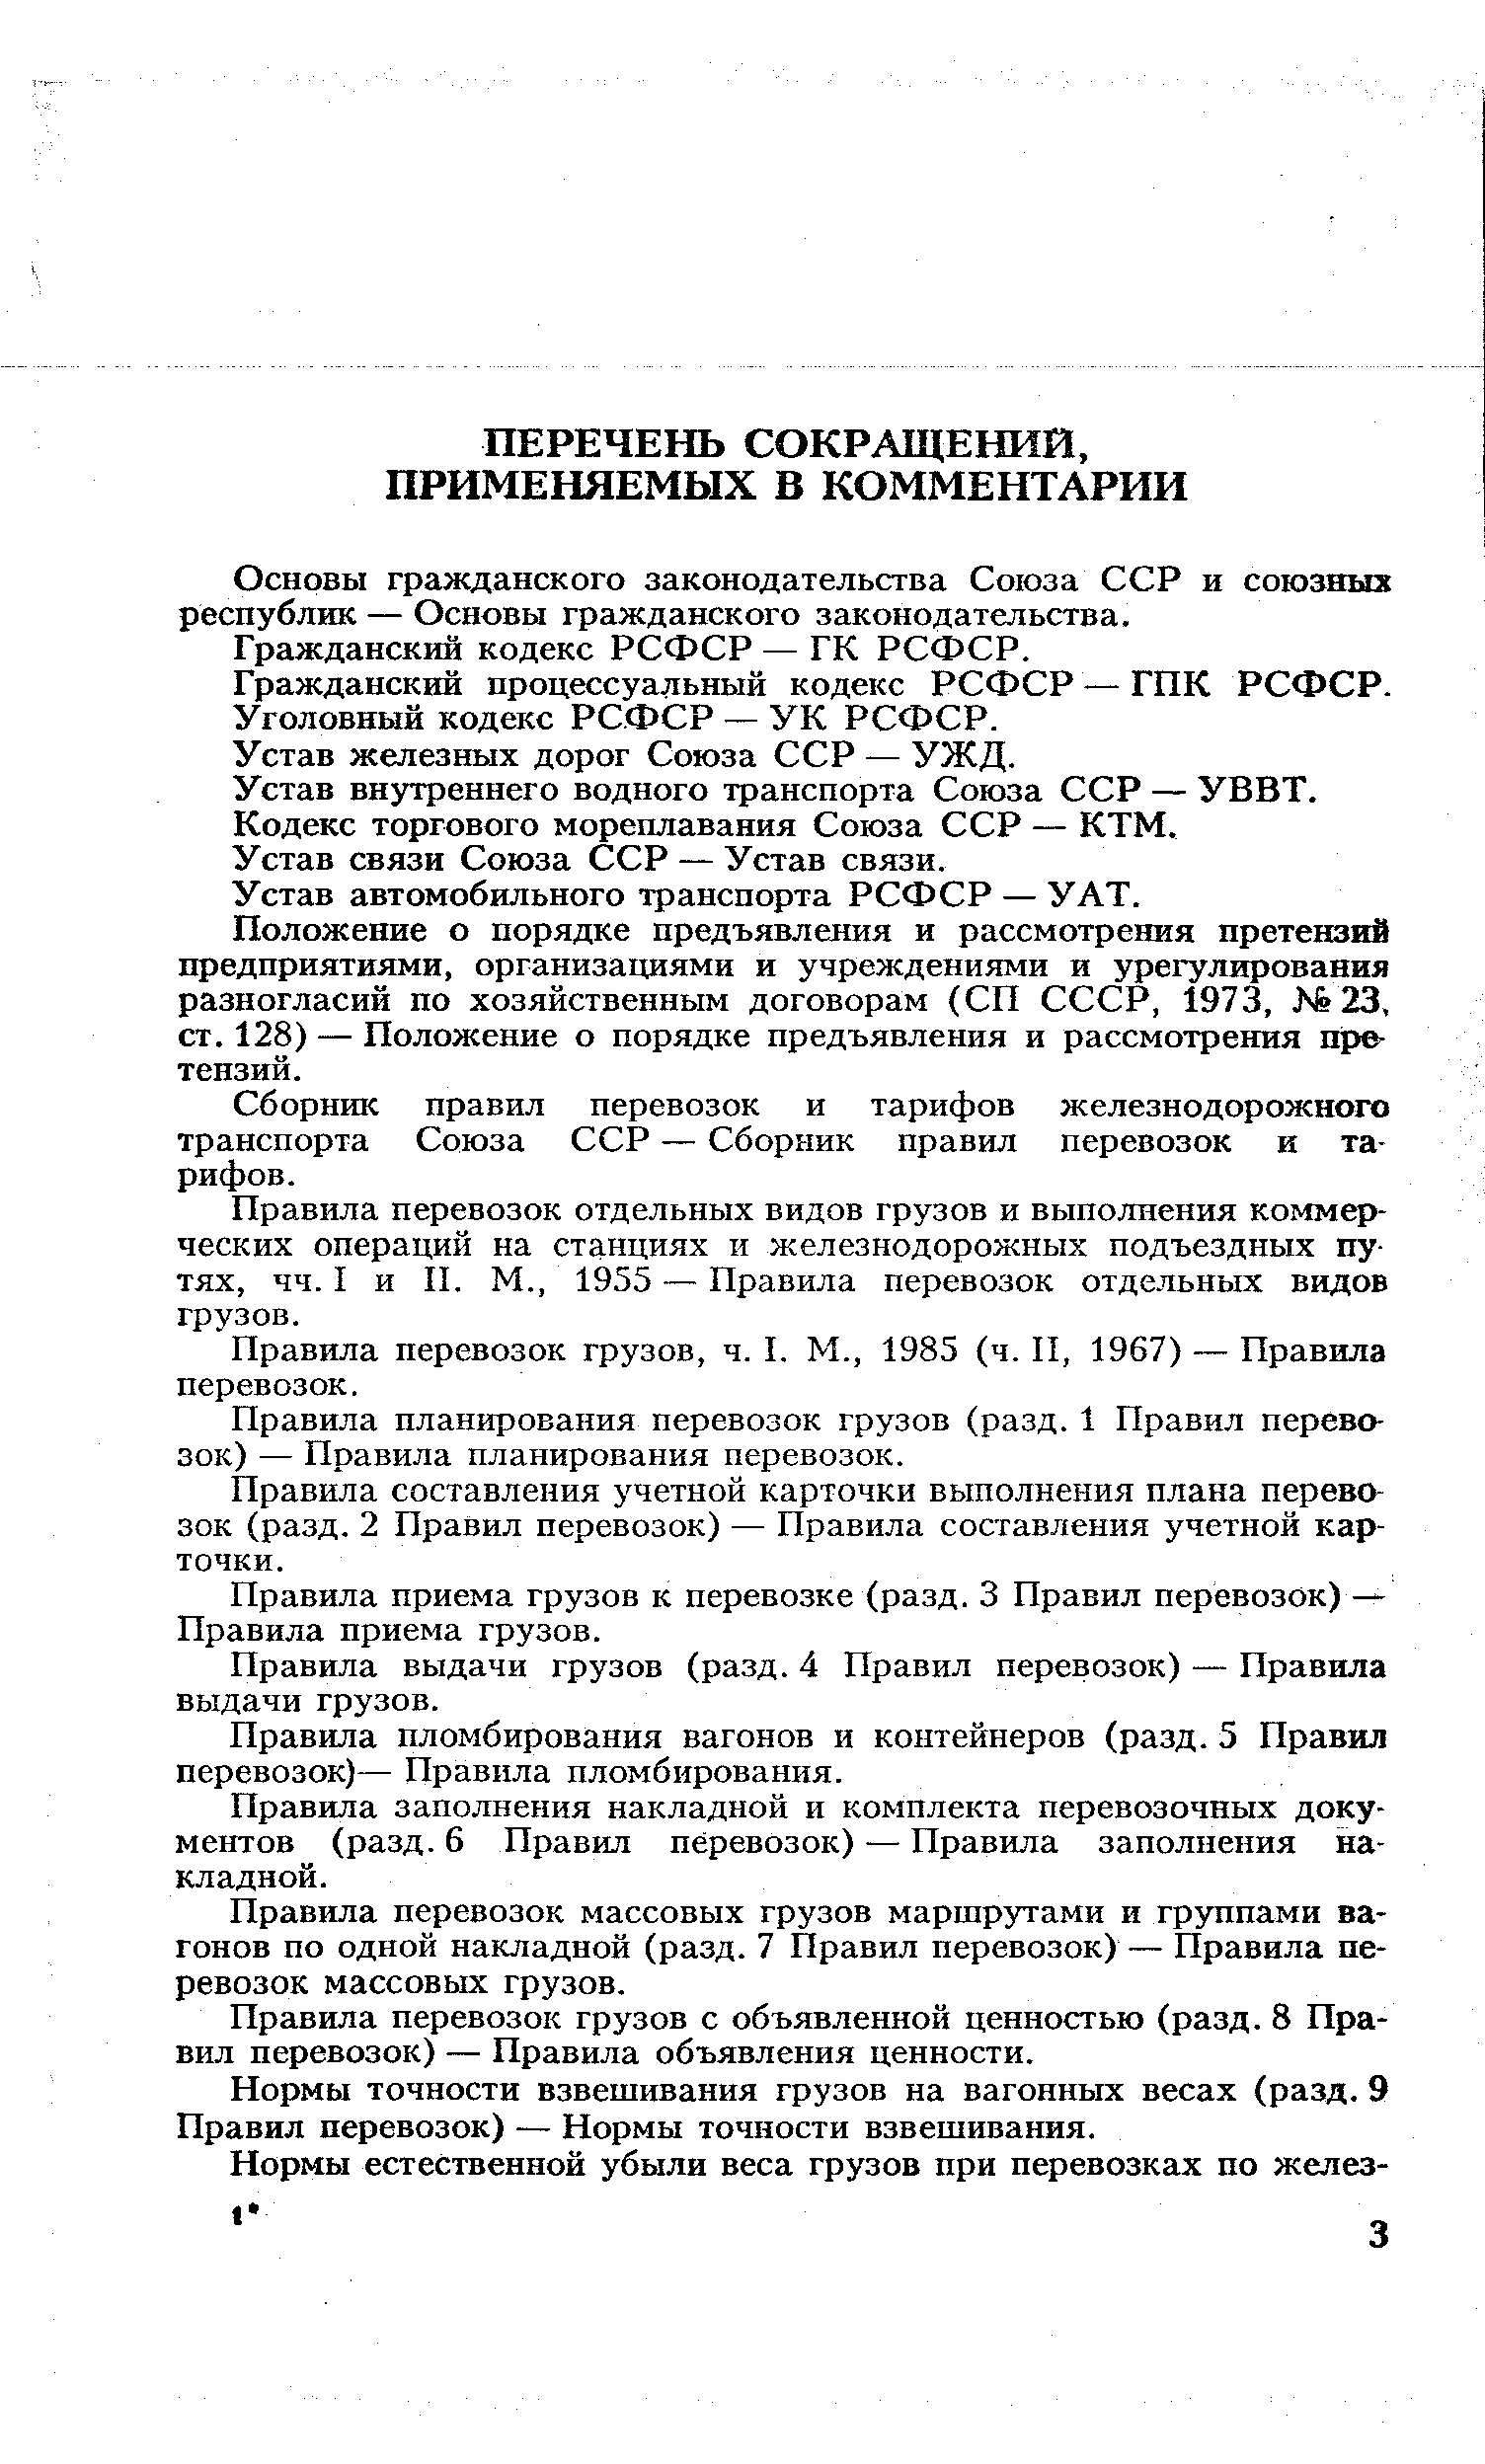 Устав железных дорог Союза ССР — УЖД.
